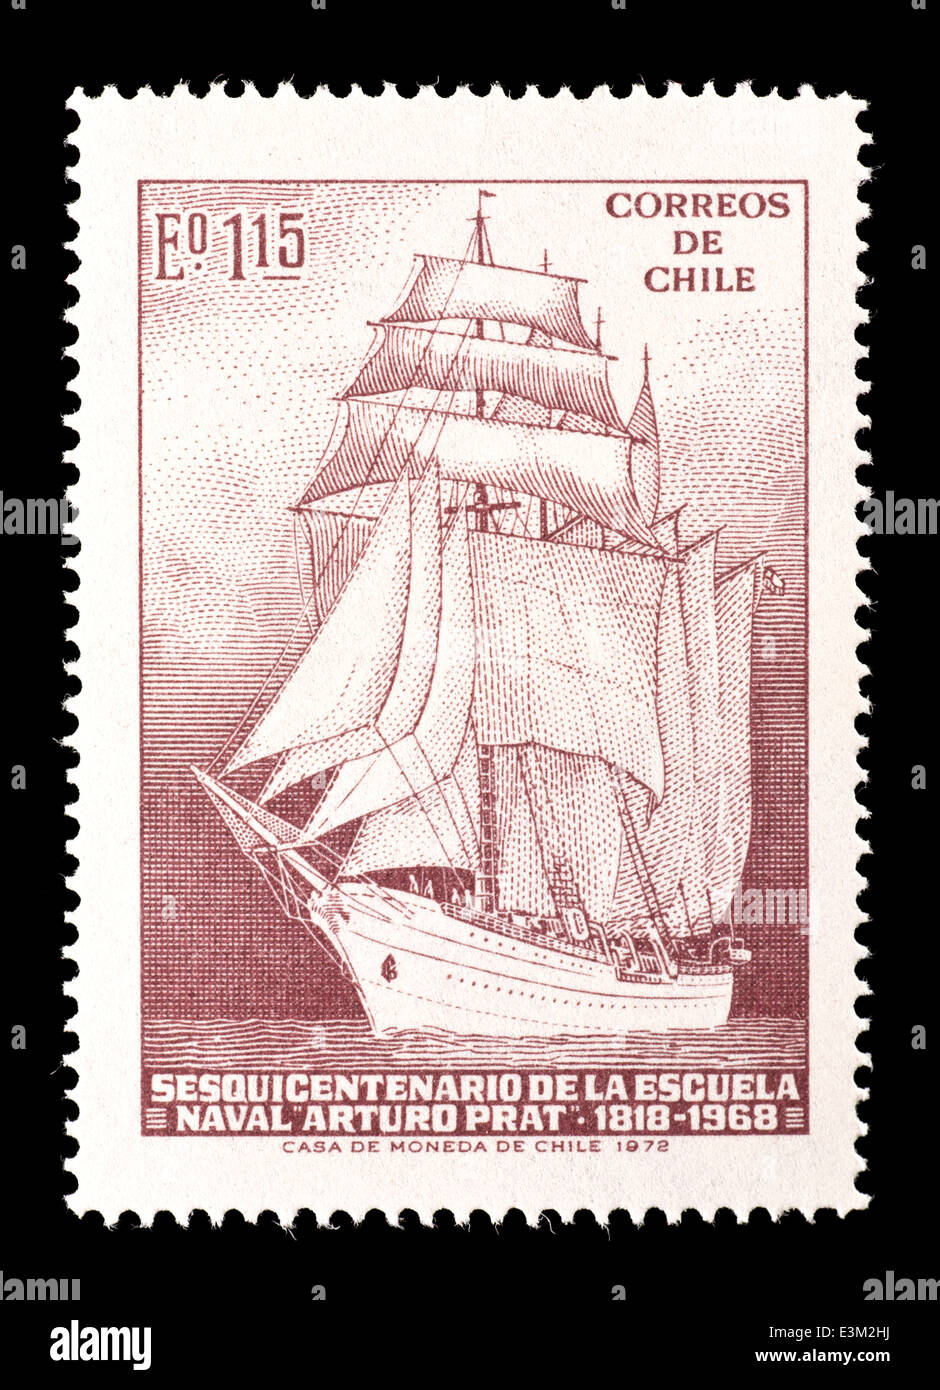 Briefmarke aus Chile mit einem Segelschiff, ausgestellt für das Sesquicentennial der Arturo Pratt Naval Training School. Stockfoto